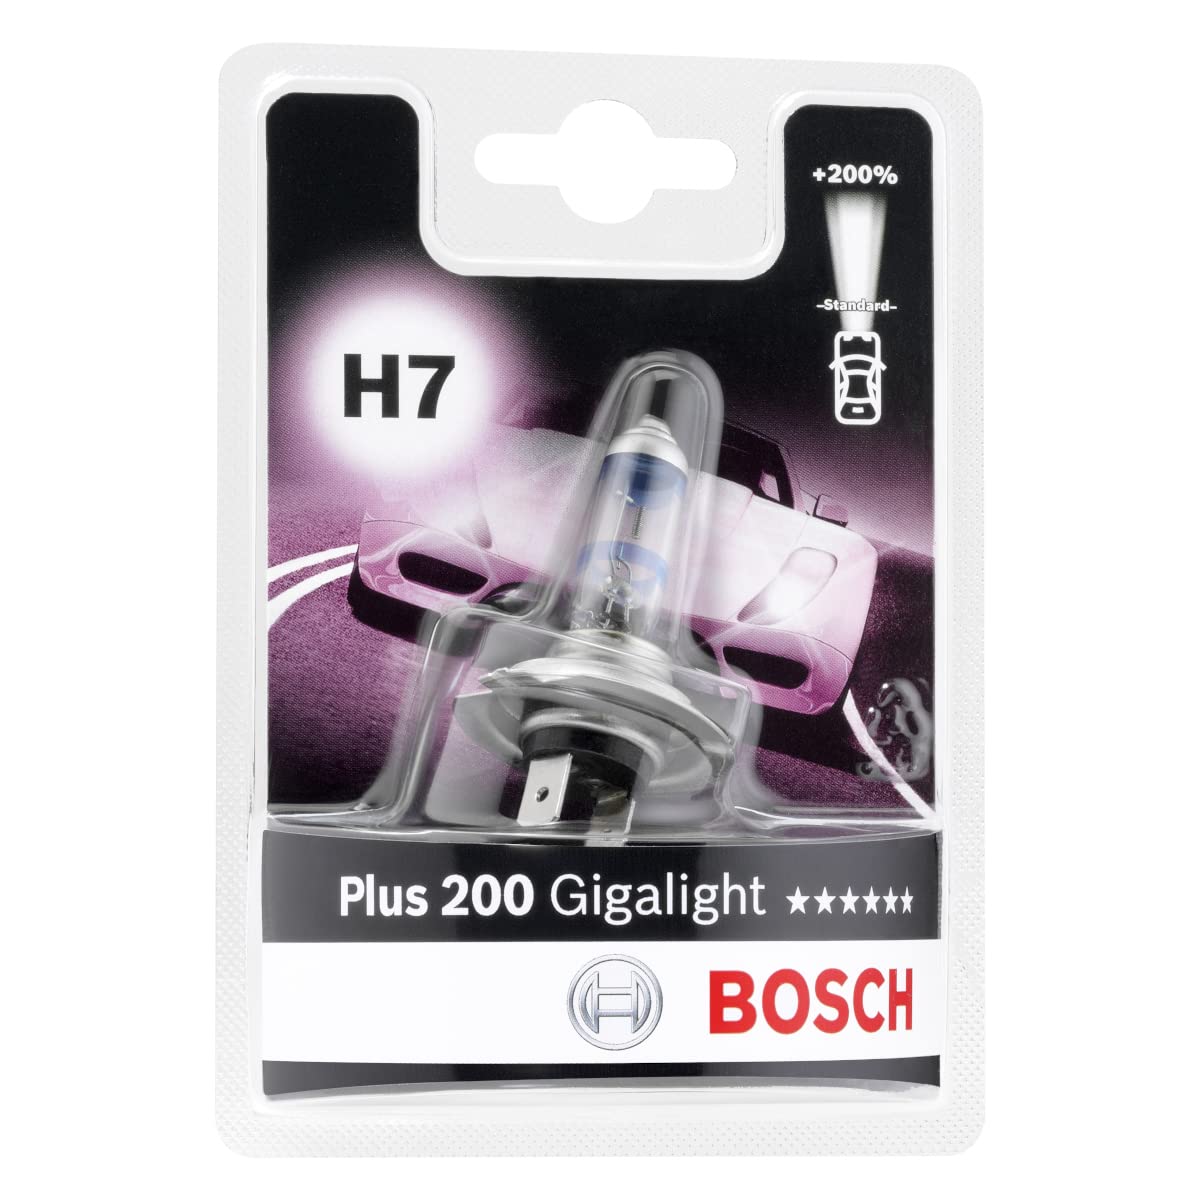 Bosch H7 Plus 200 Gigalight Lampe - 12 V 55 W PX26d - 1 Stück von Bosch Automotive